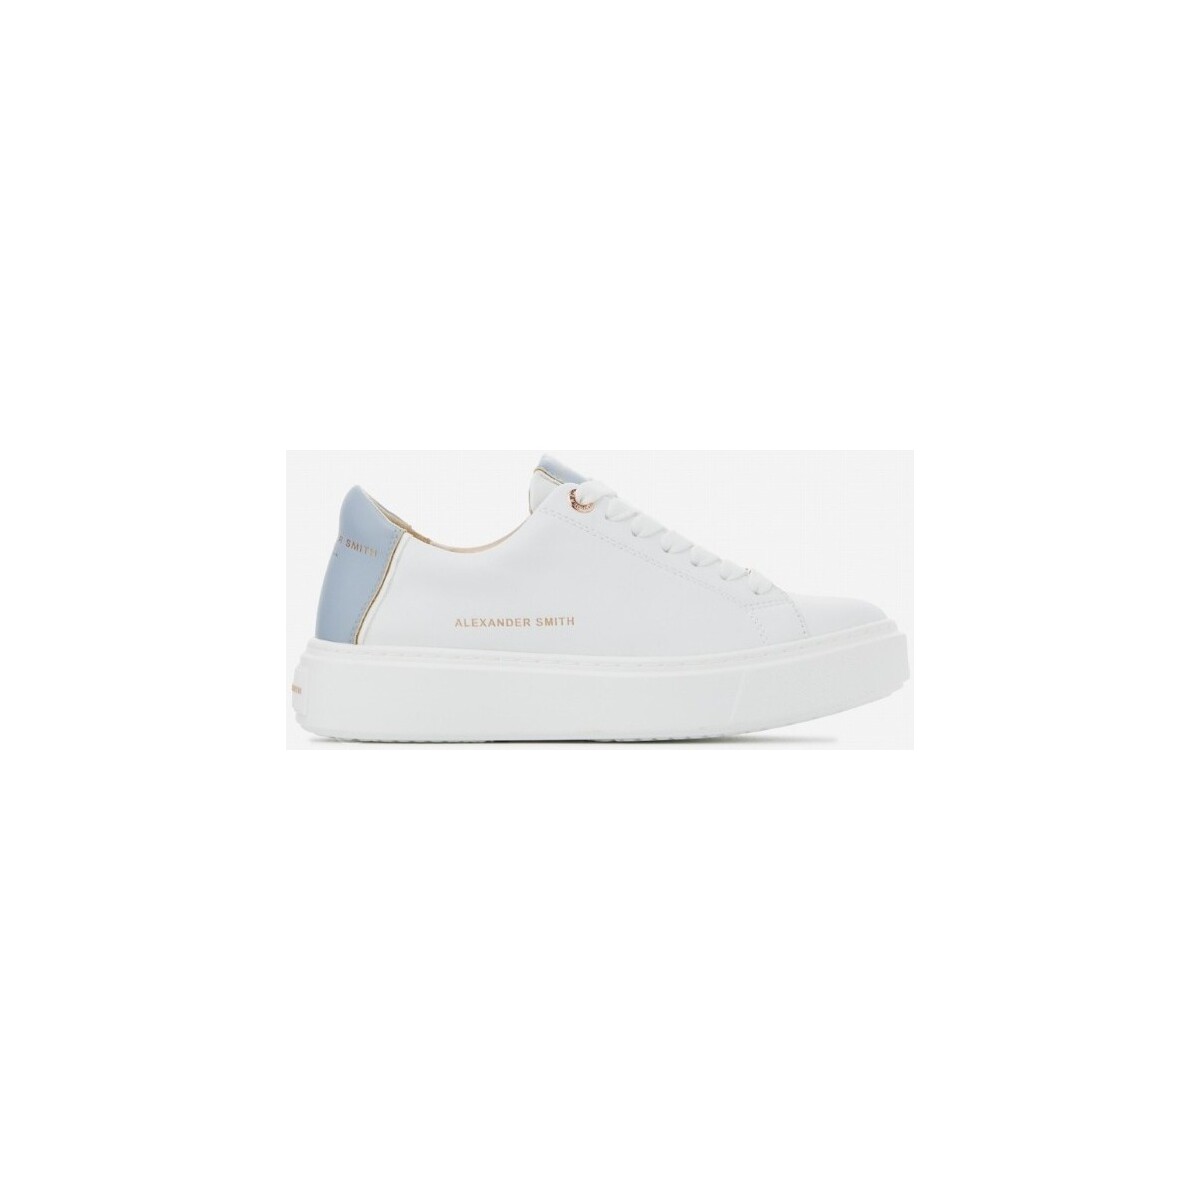 Zapatos Mujer Deportivas Moda Alexander Smith ALAZLDW8010WLF Blanco